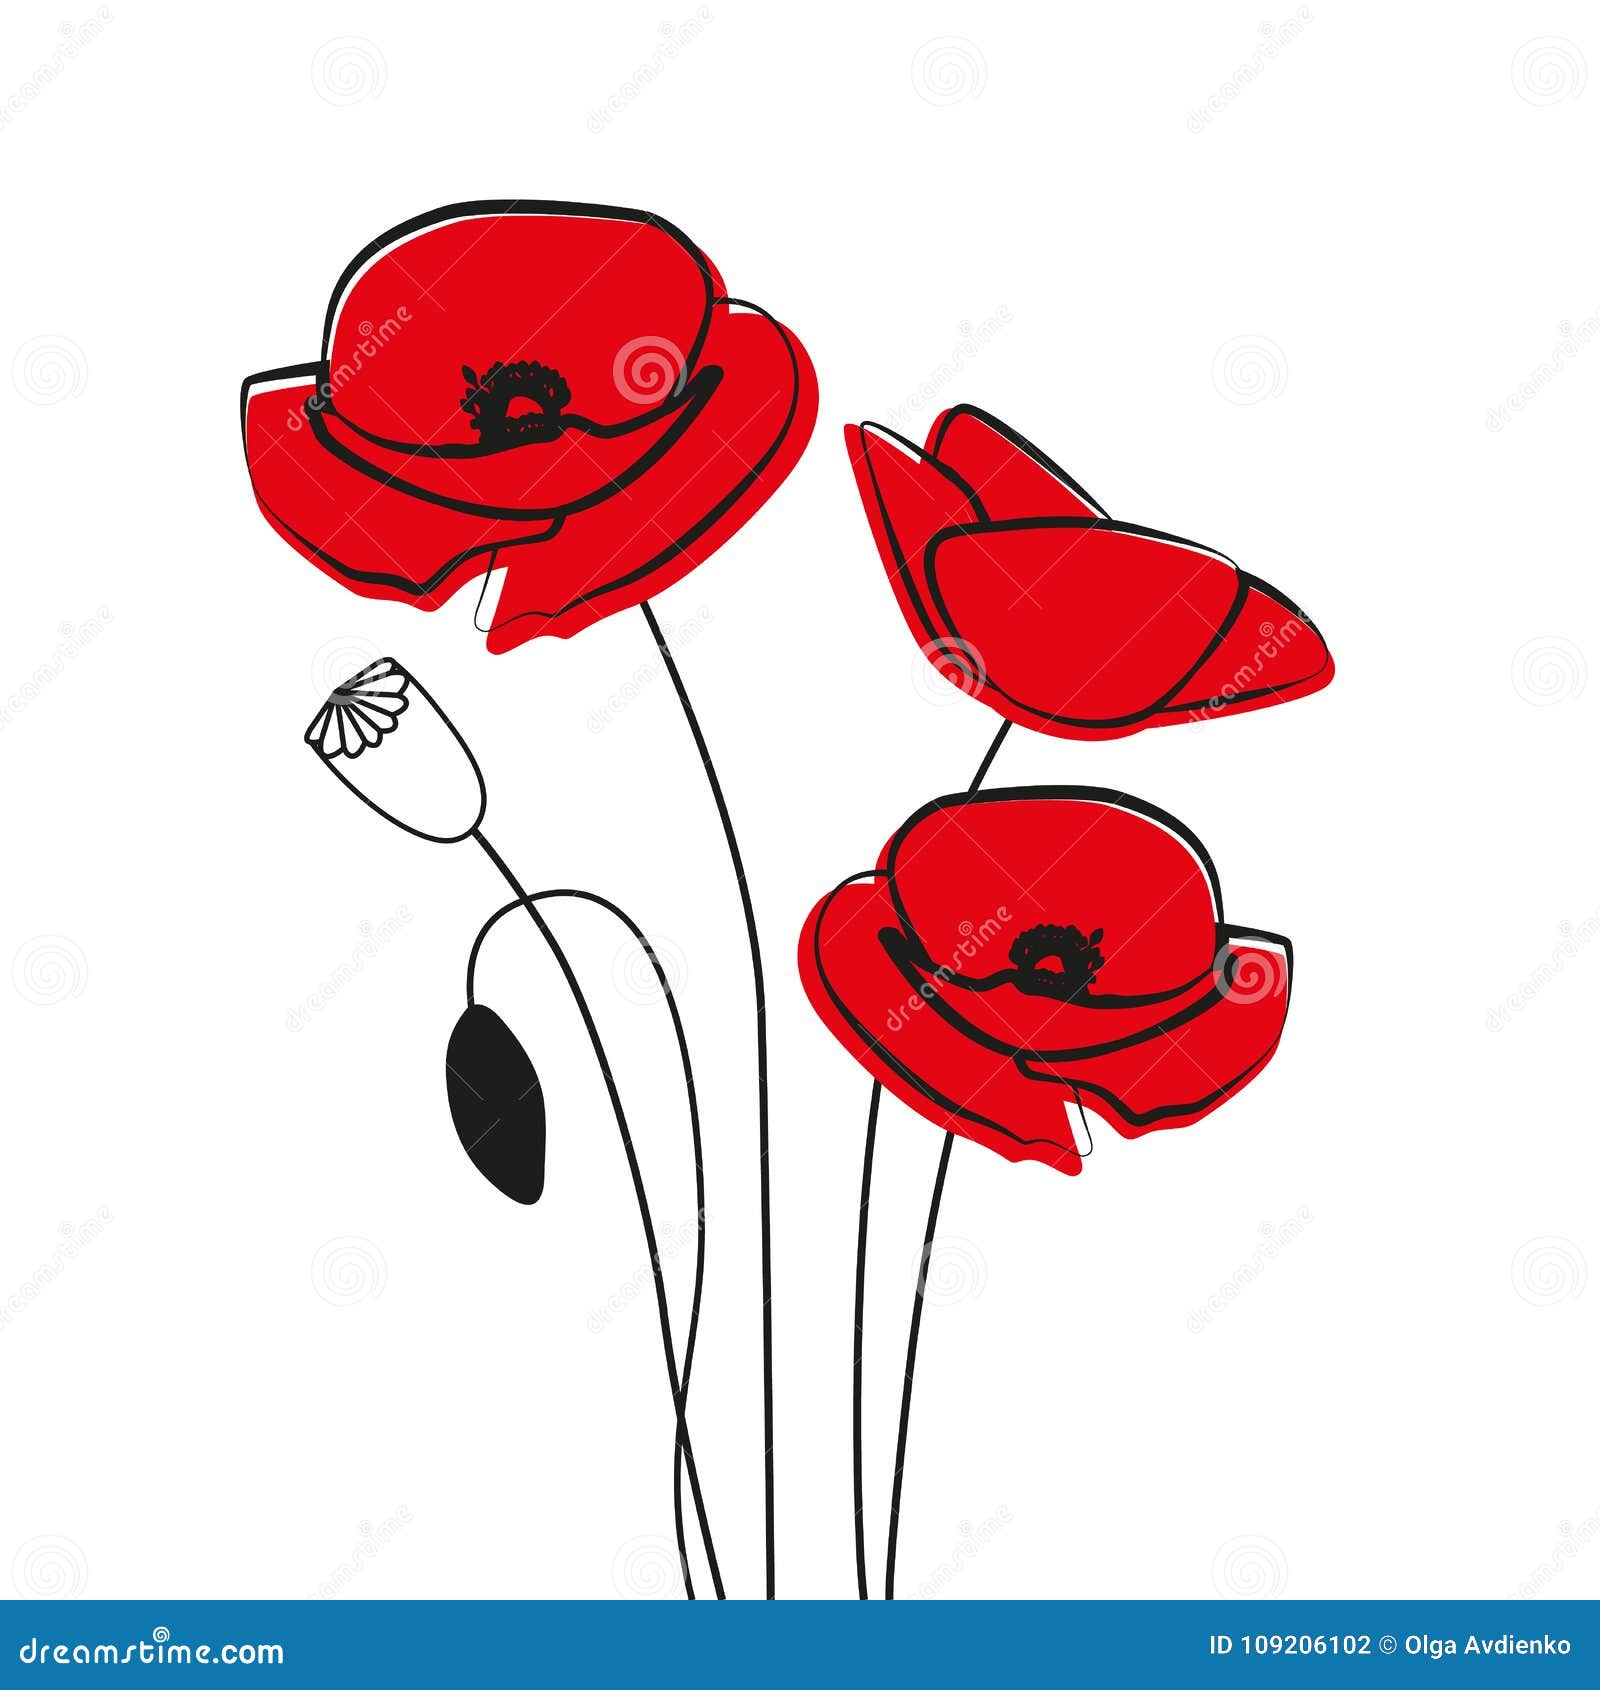 Red Poppy Flower Stock Vector Illustration Of Black